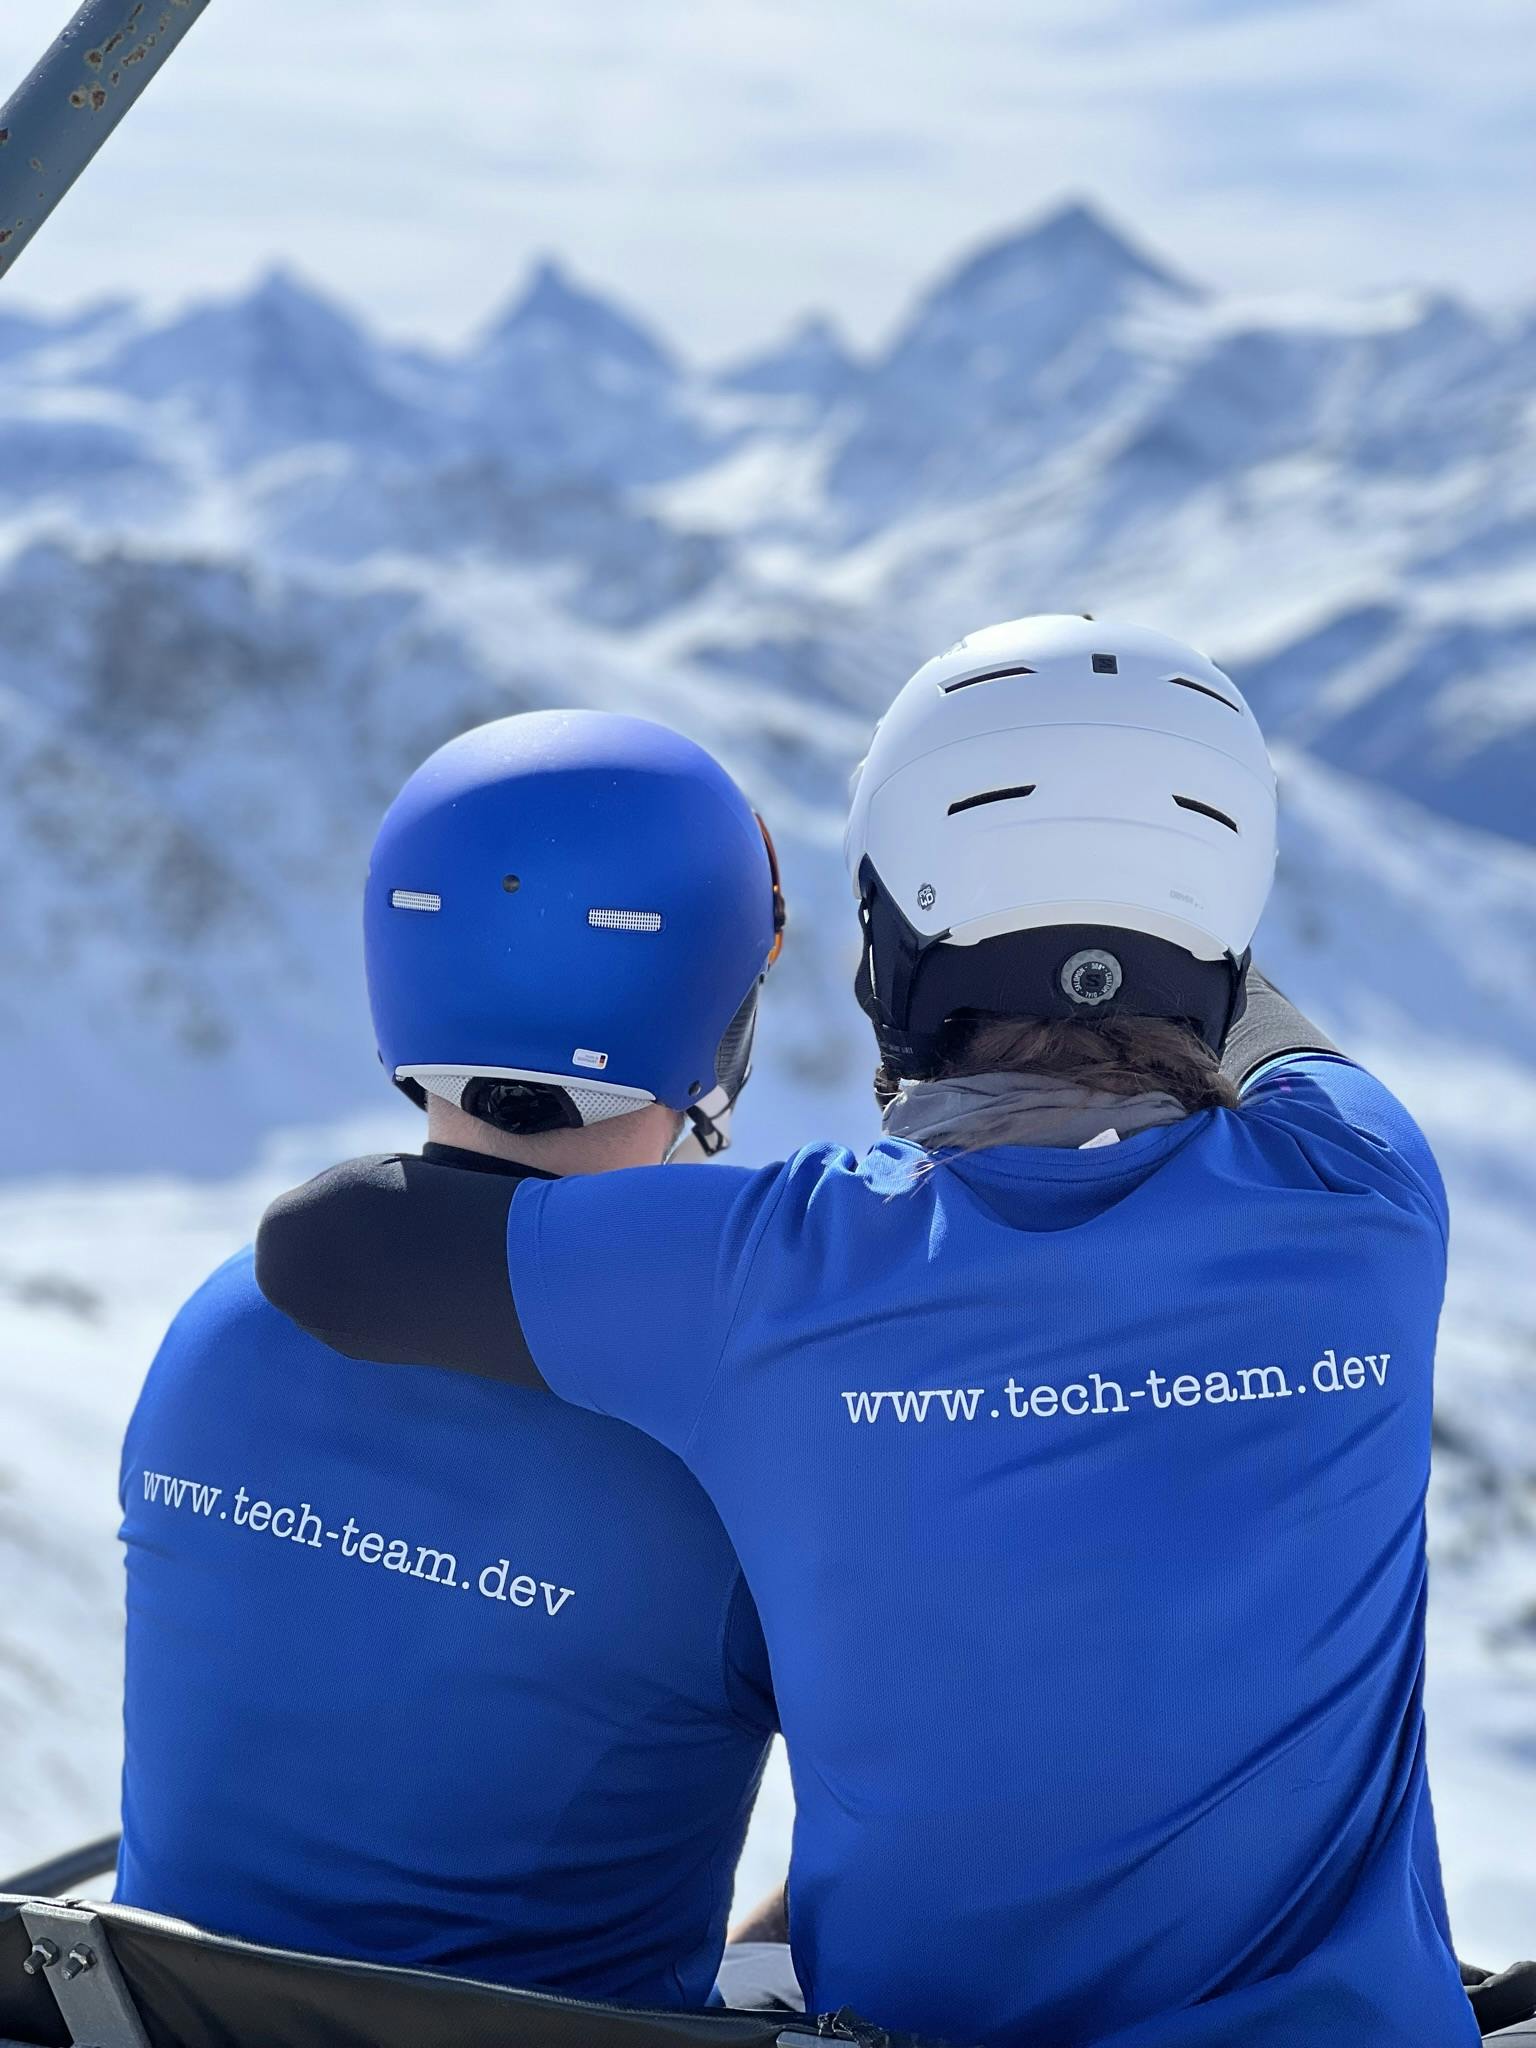 Zwei Skifahrer tragen ein T-Shirt mit der Aufschrift "www.tech-team.dev"